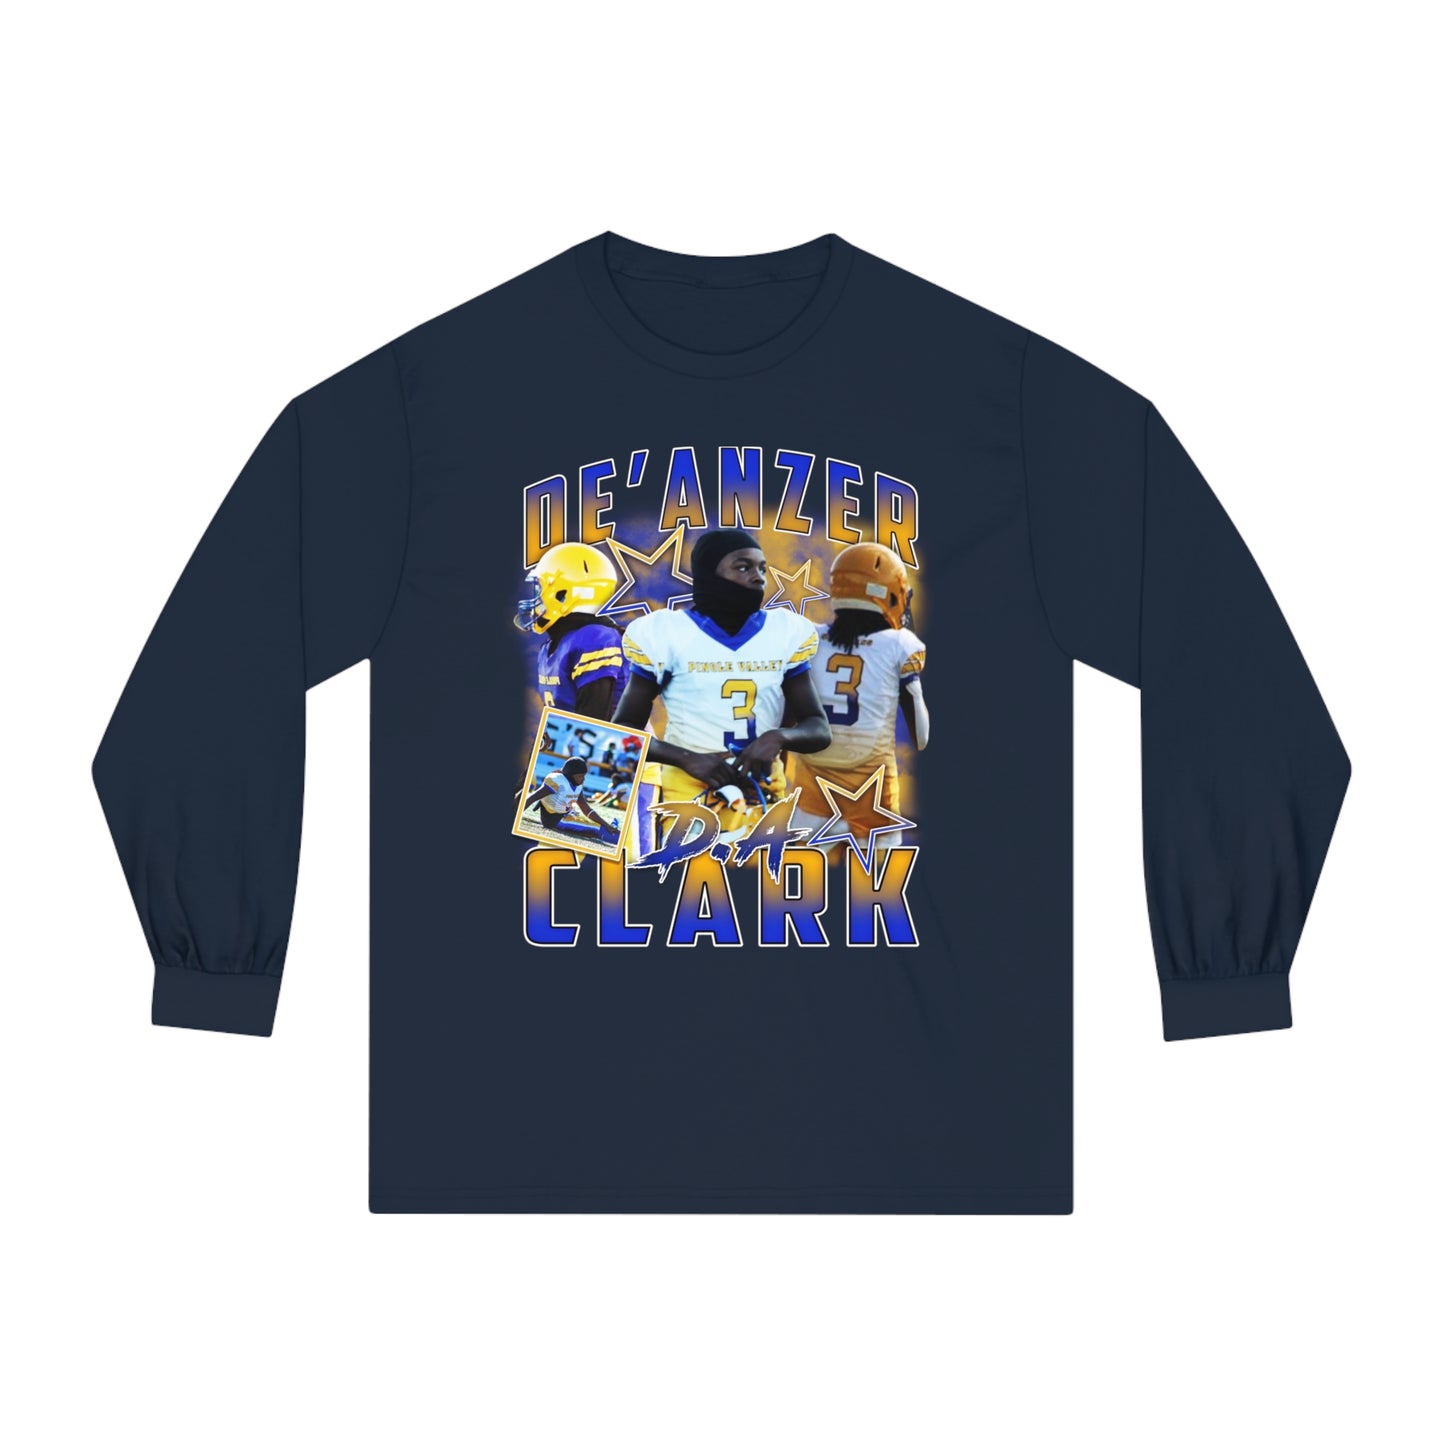 De'Anzer Clark Classic Long Sleeve T-Shirt